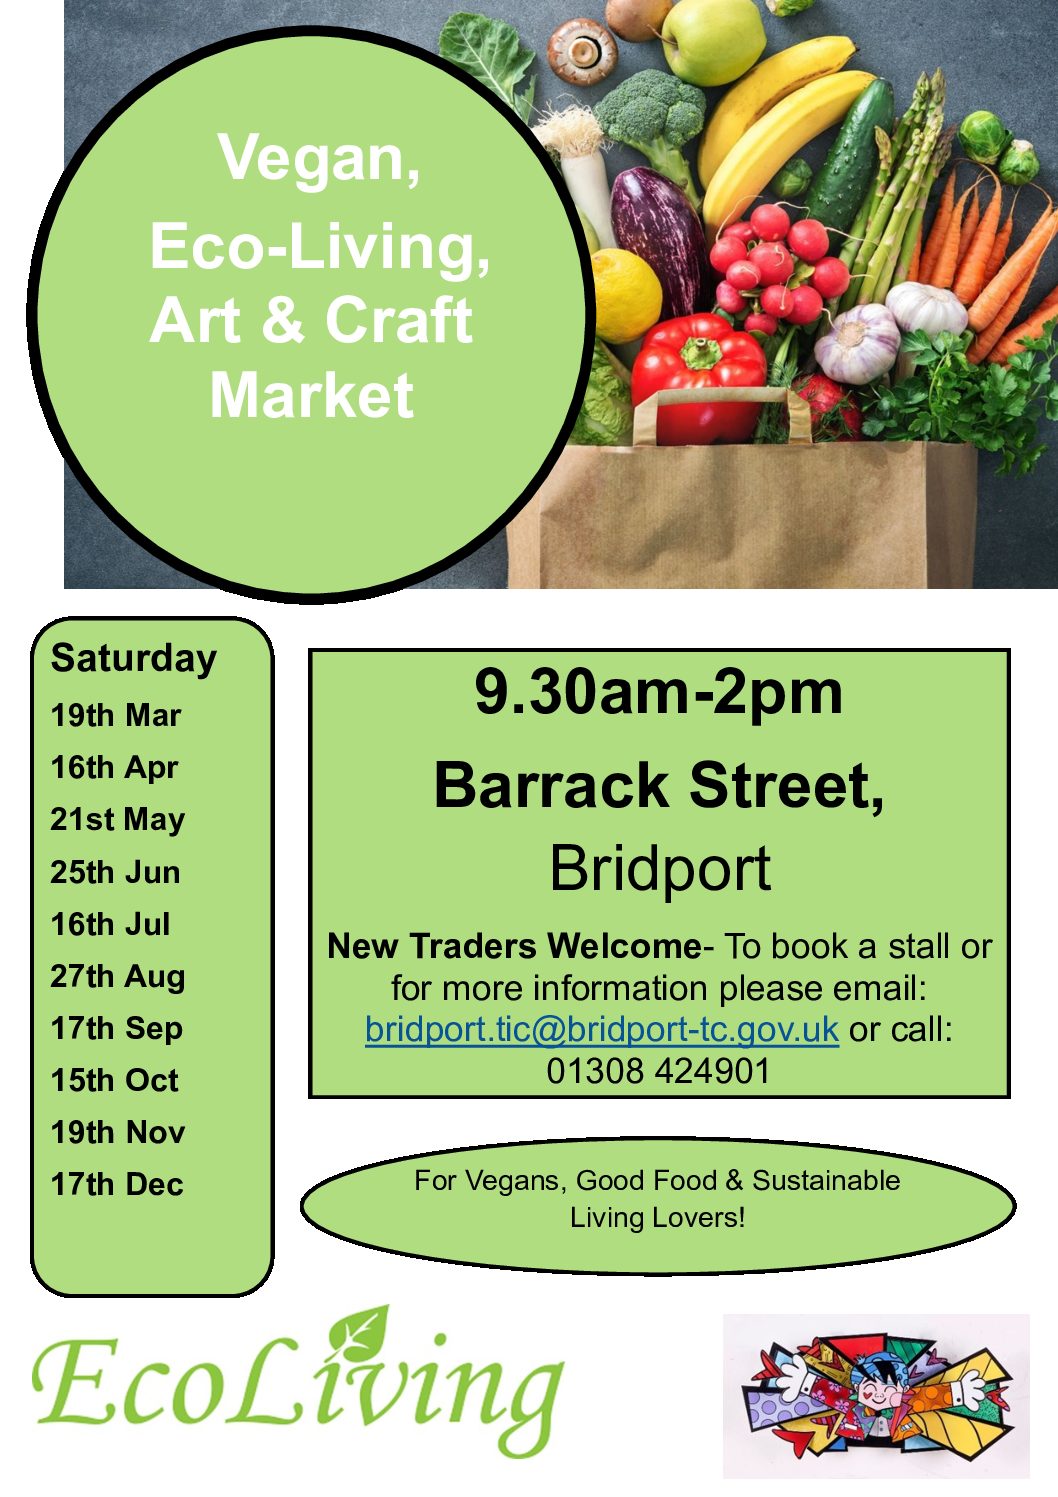 Bridport Vegan, Eco Living, Arts & Crafts Markets